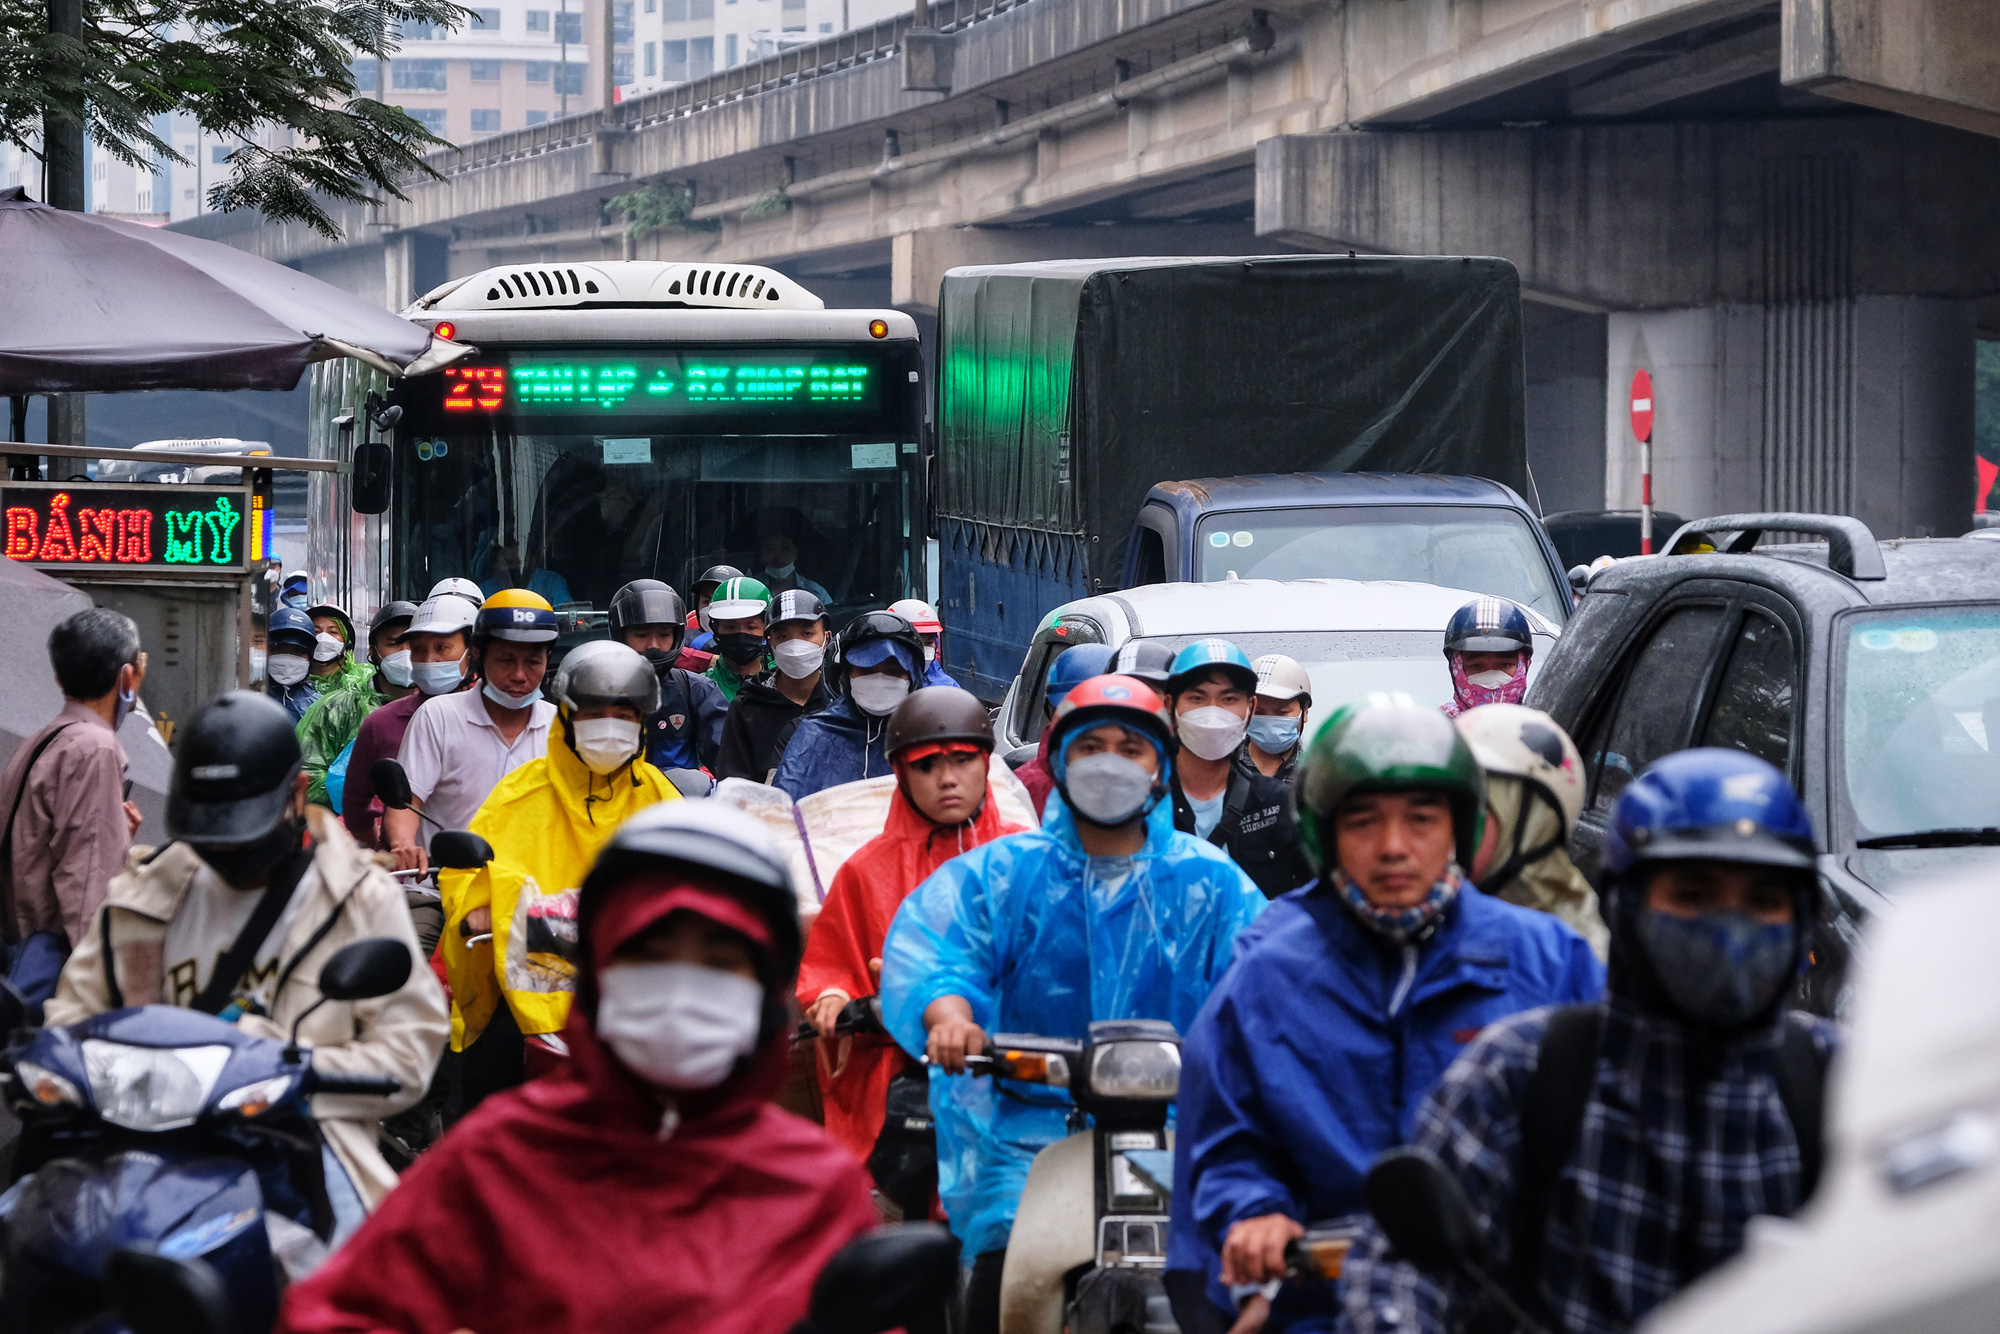 CẤP BÁO: Đường phố Hà Nội đang kẹt cứng, hàng nghìn người về quê nghỉ lễ chôn chân dưới cơn mưa nặng hạt - Ảnh 3.